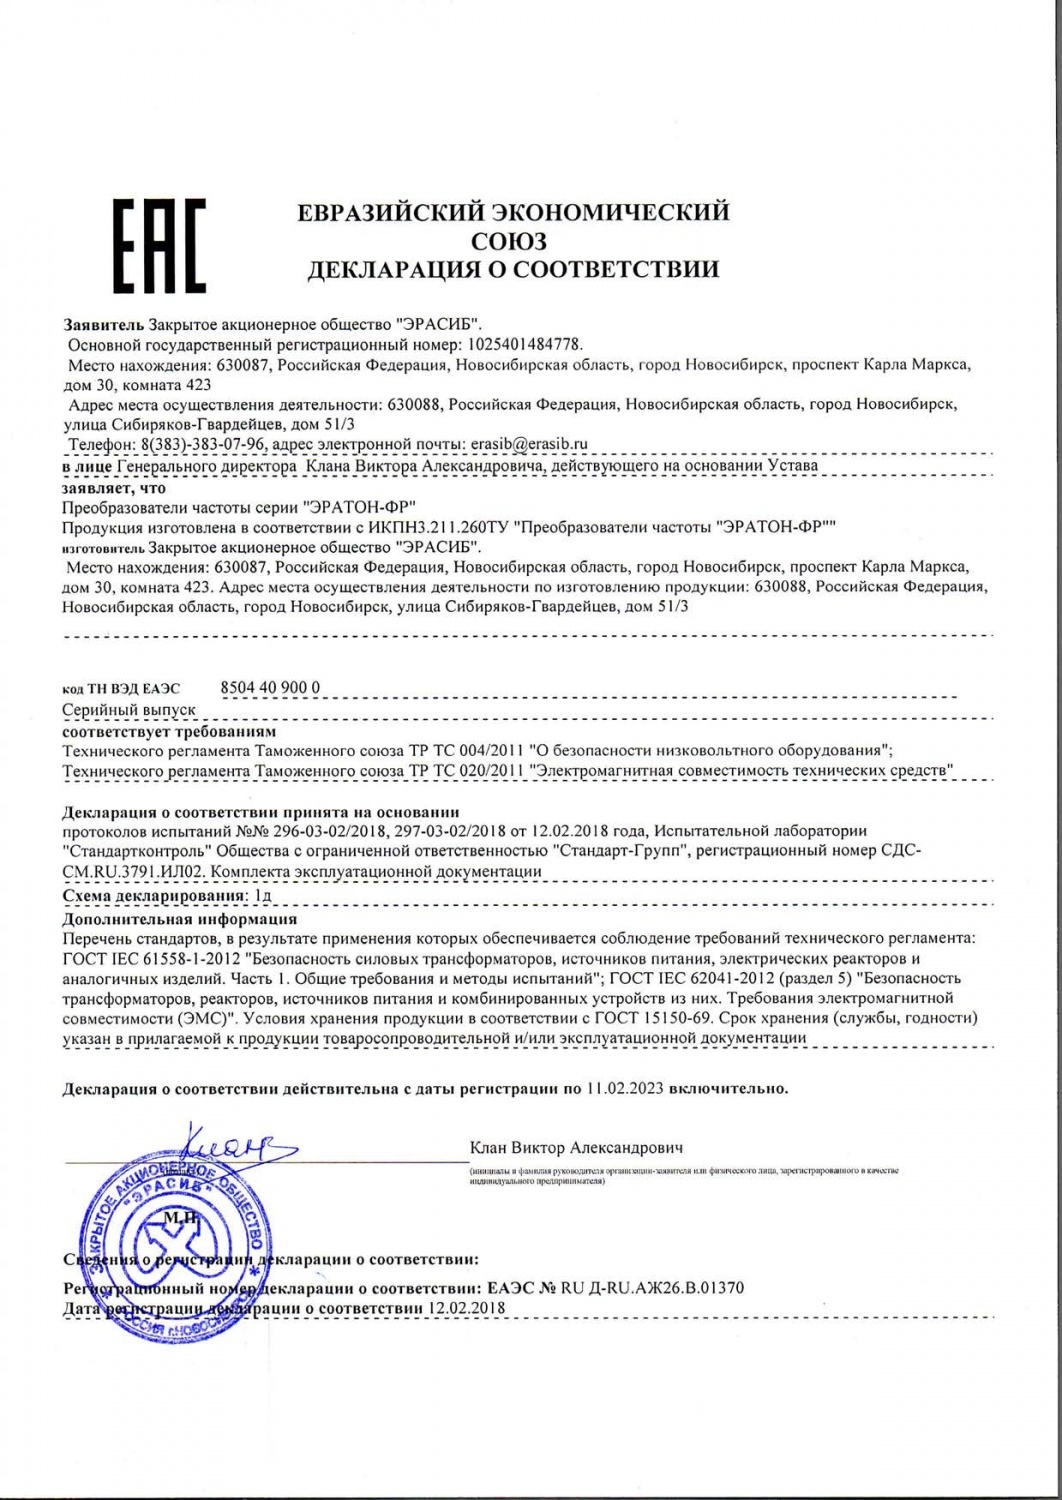 Декларация о соответствии преобразователей частоты серии «ЭРАТОН-ФР»